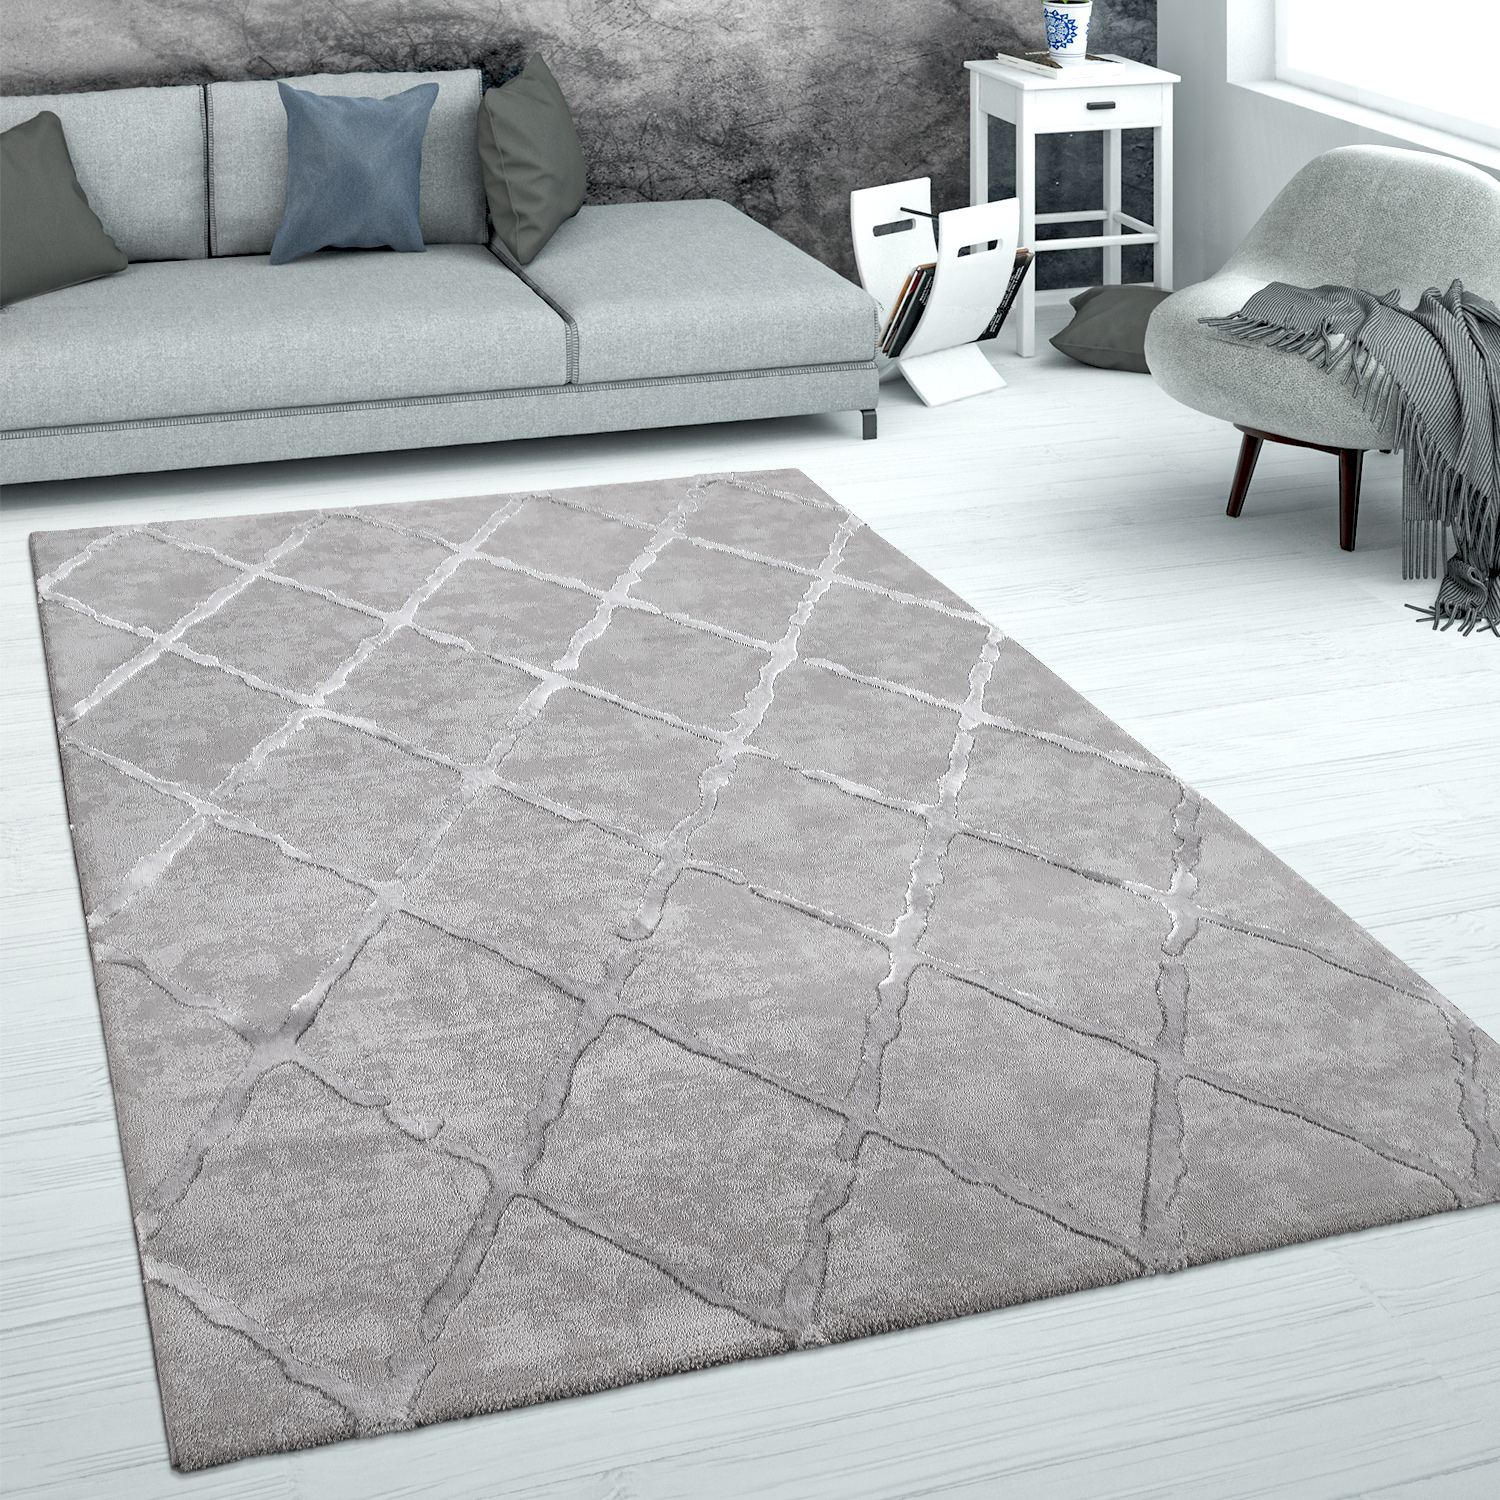 Kurzflor Wohnzimmer Teppich Trendige Moderne Linien Muster In Lila Schwarz Weiß 